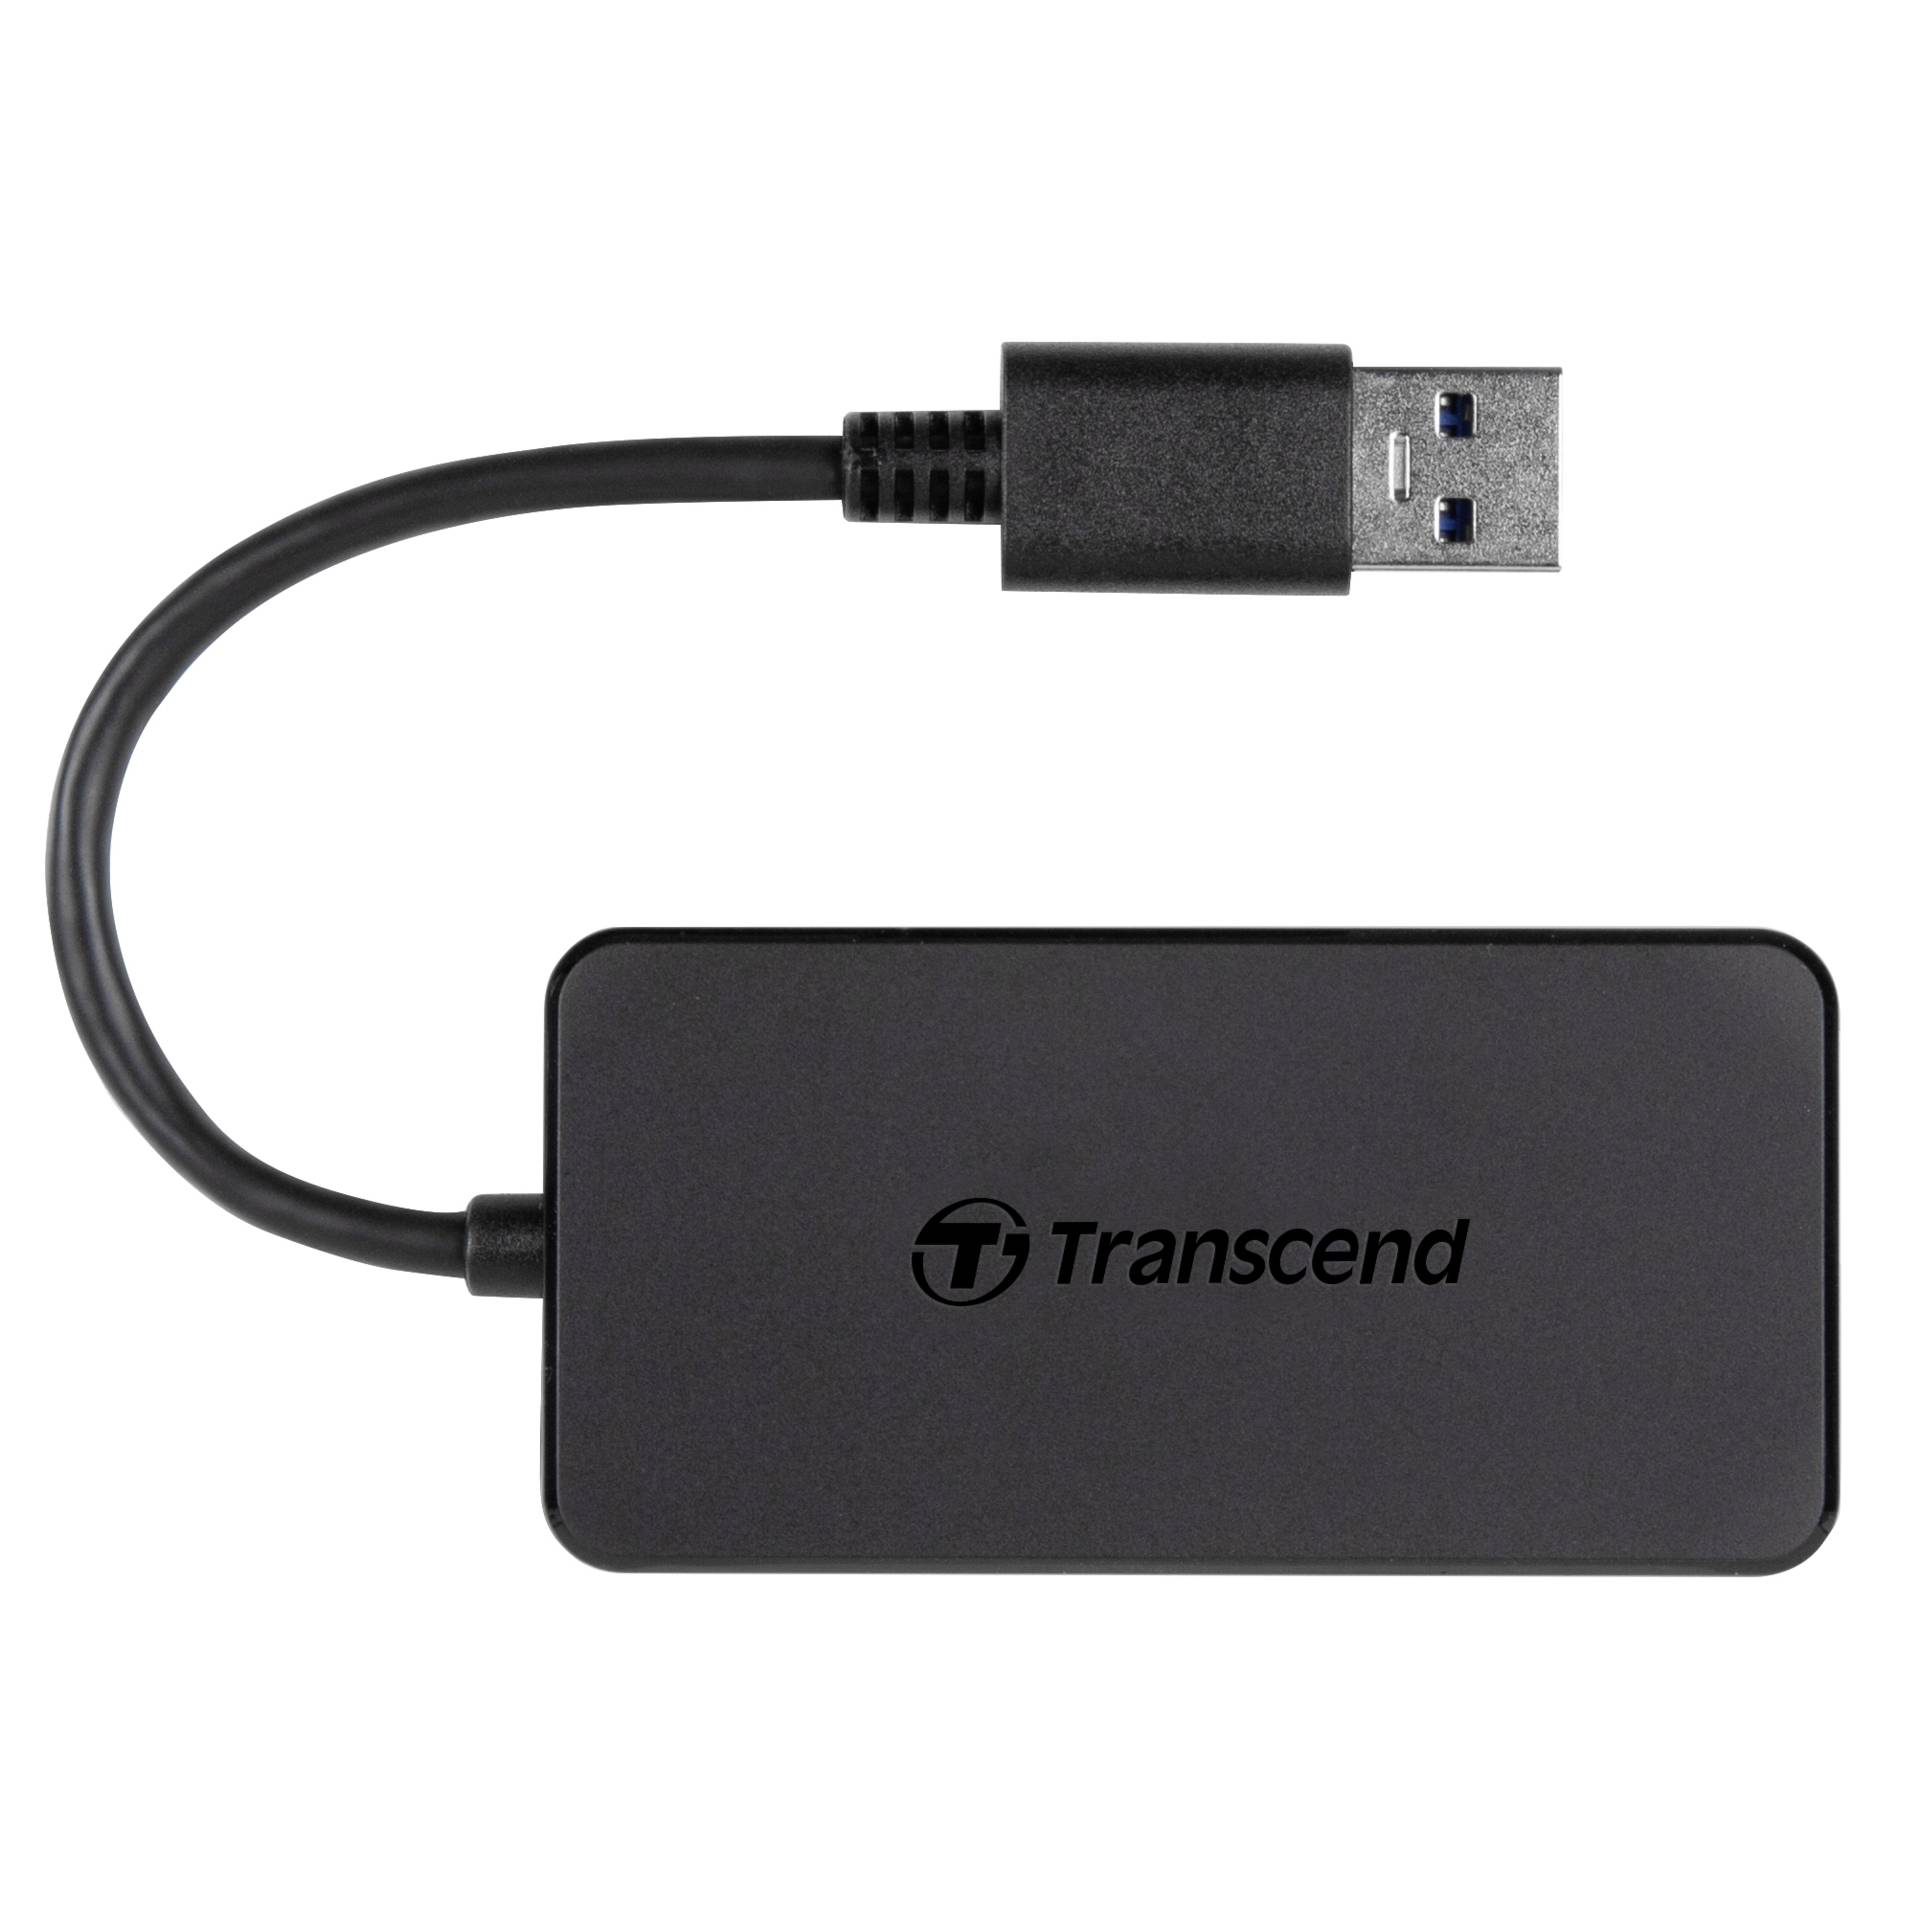 Transcend HUB2 USB 3.1 Gen 1